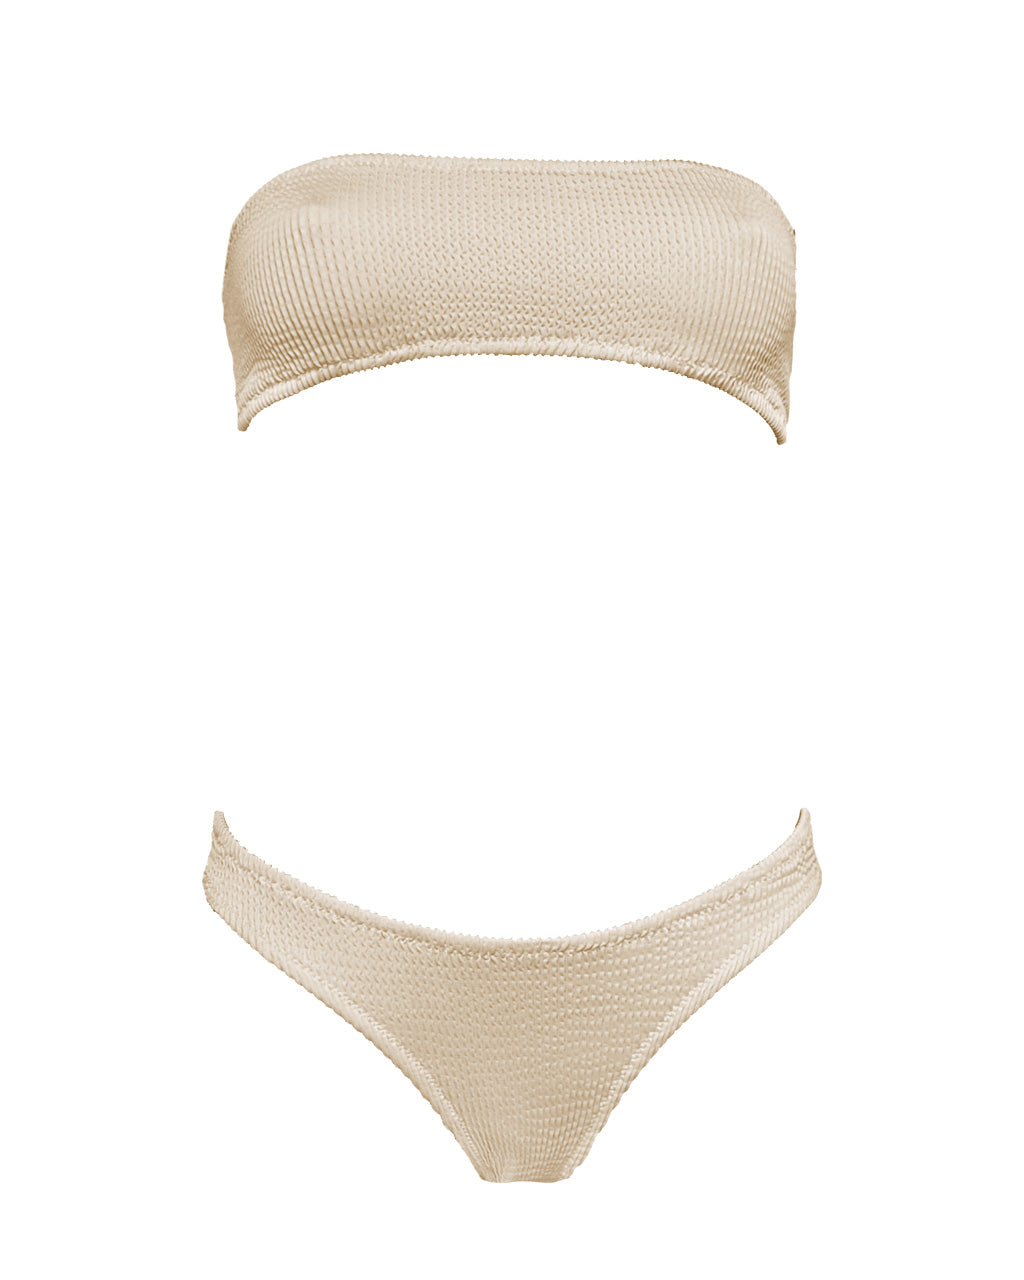 Bikini senza laccetti - OCEANO fascia - Vanilla